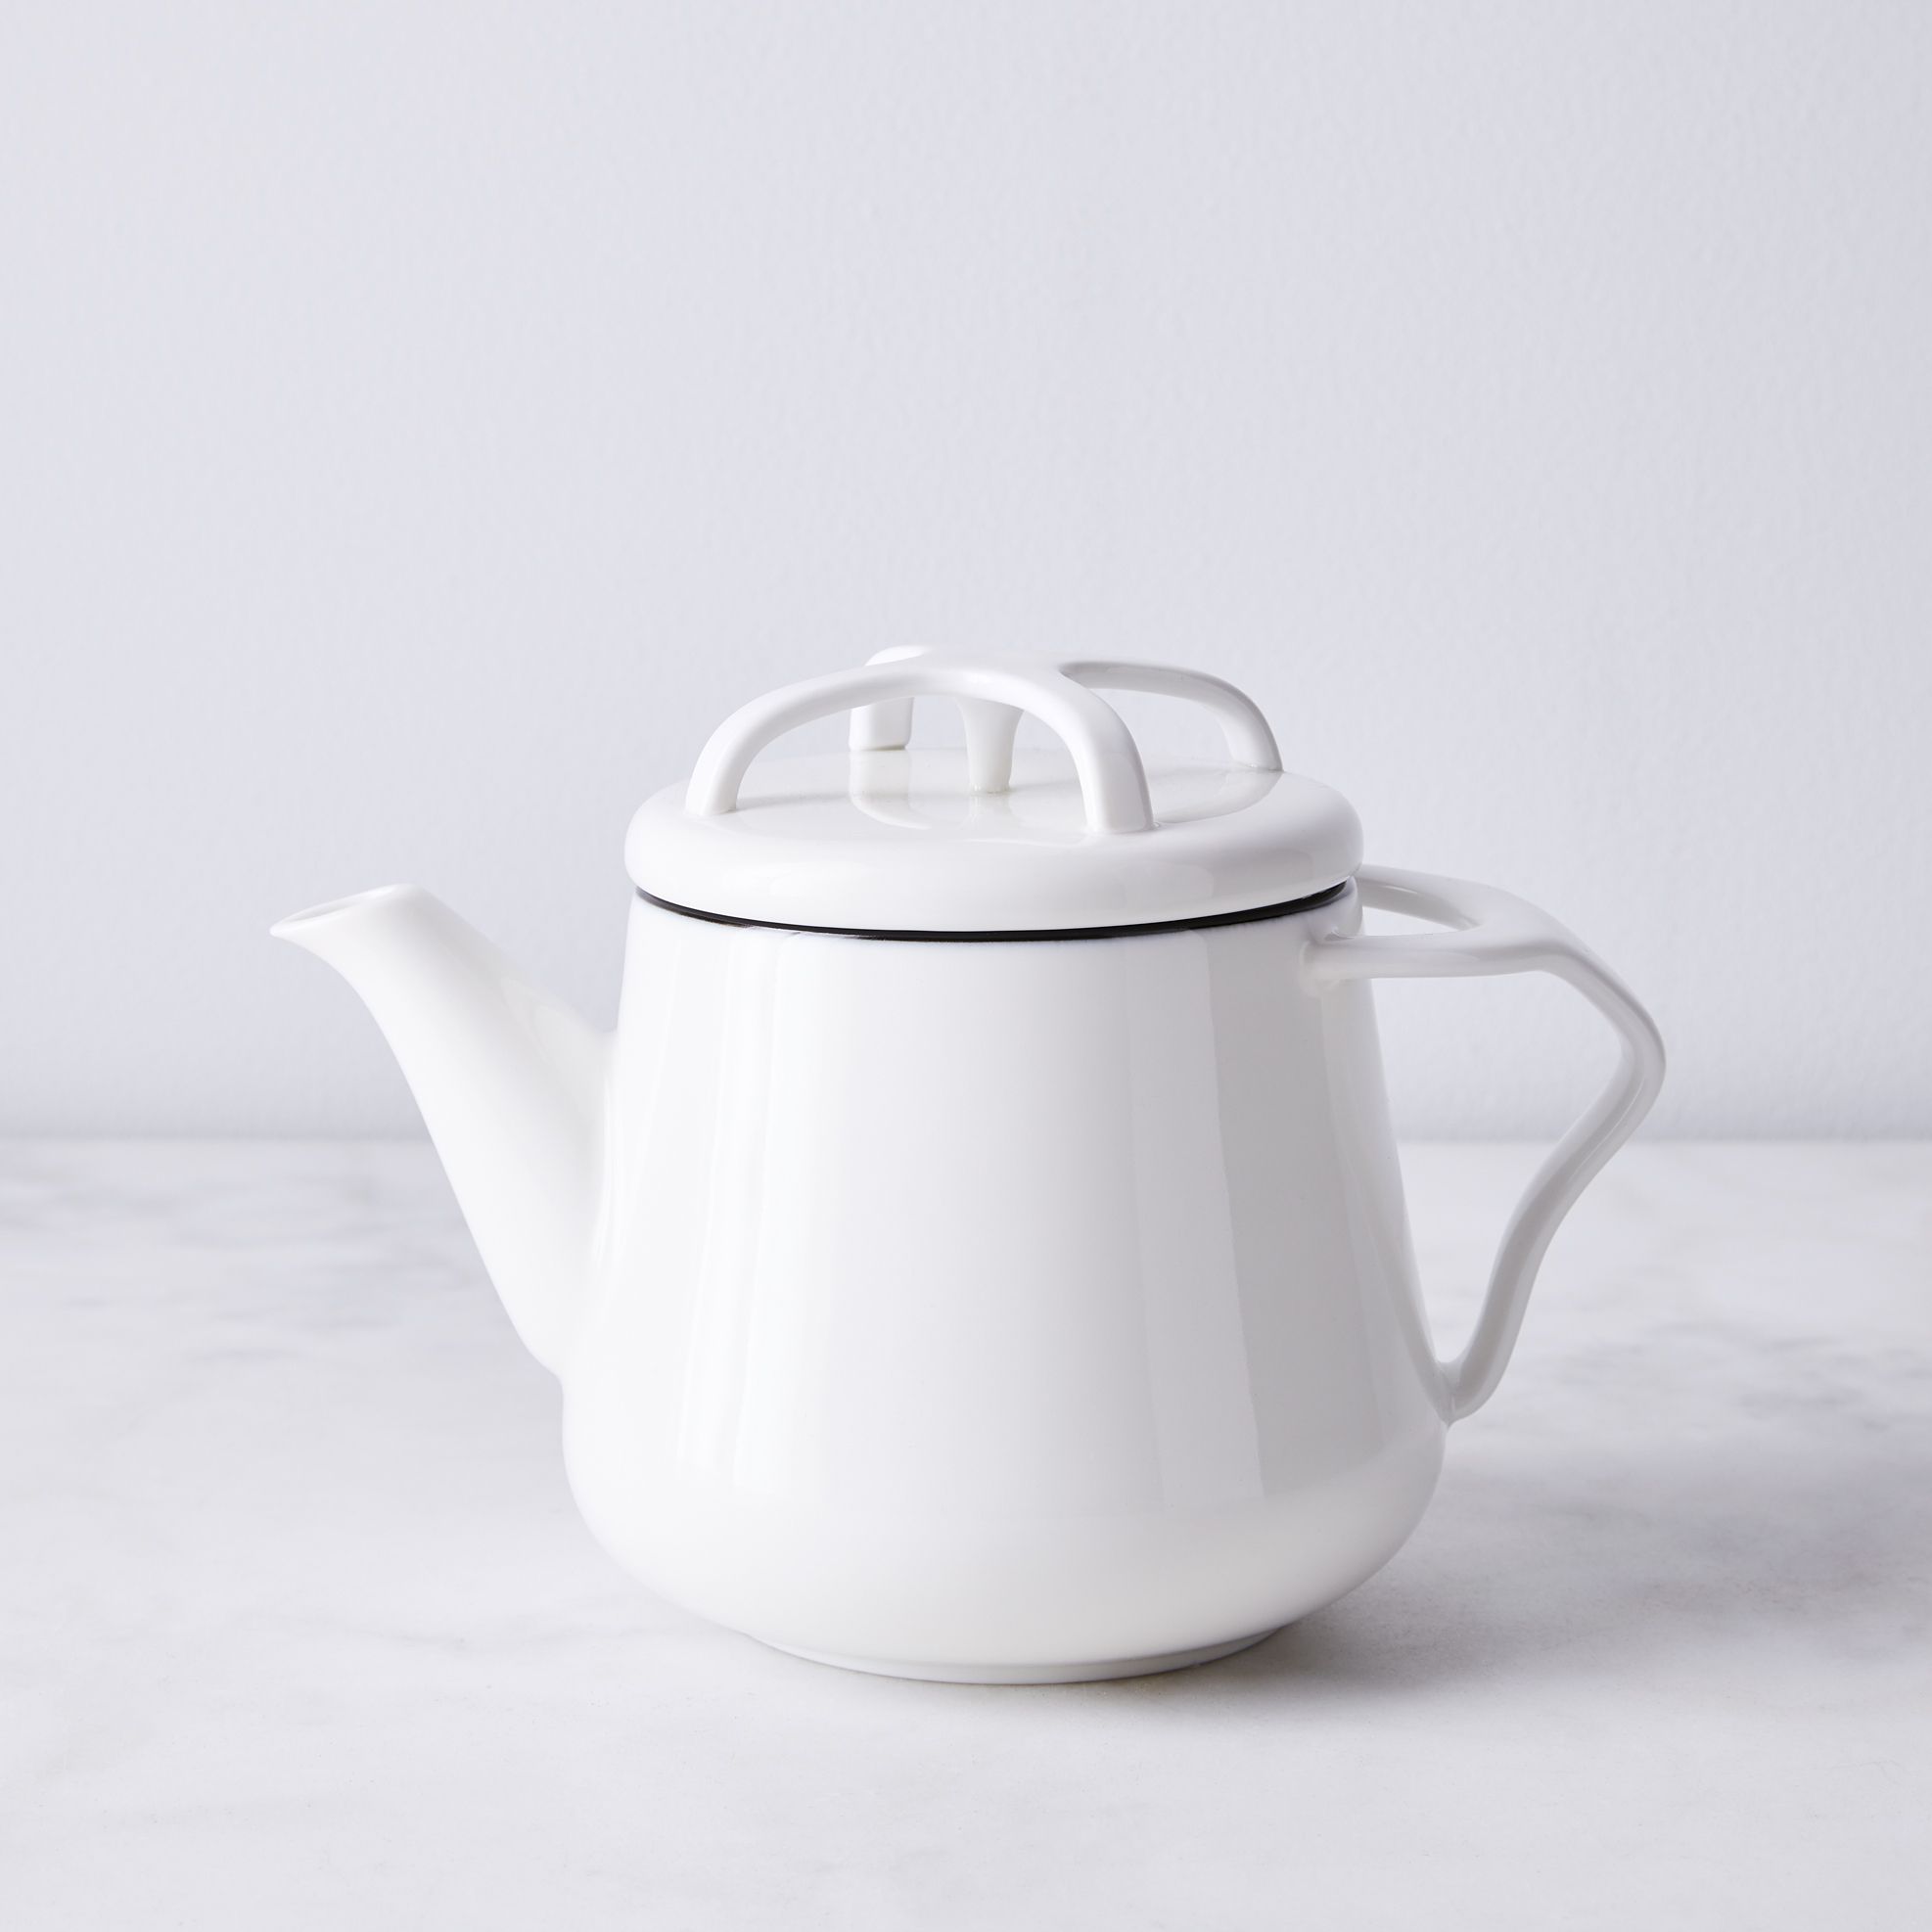 tea! by Shuna Lydon